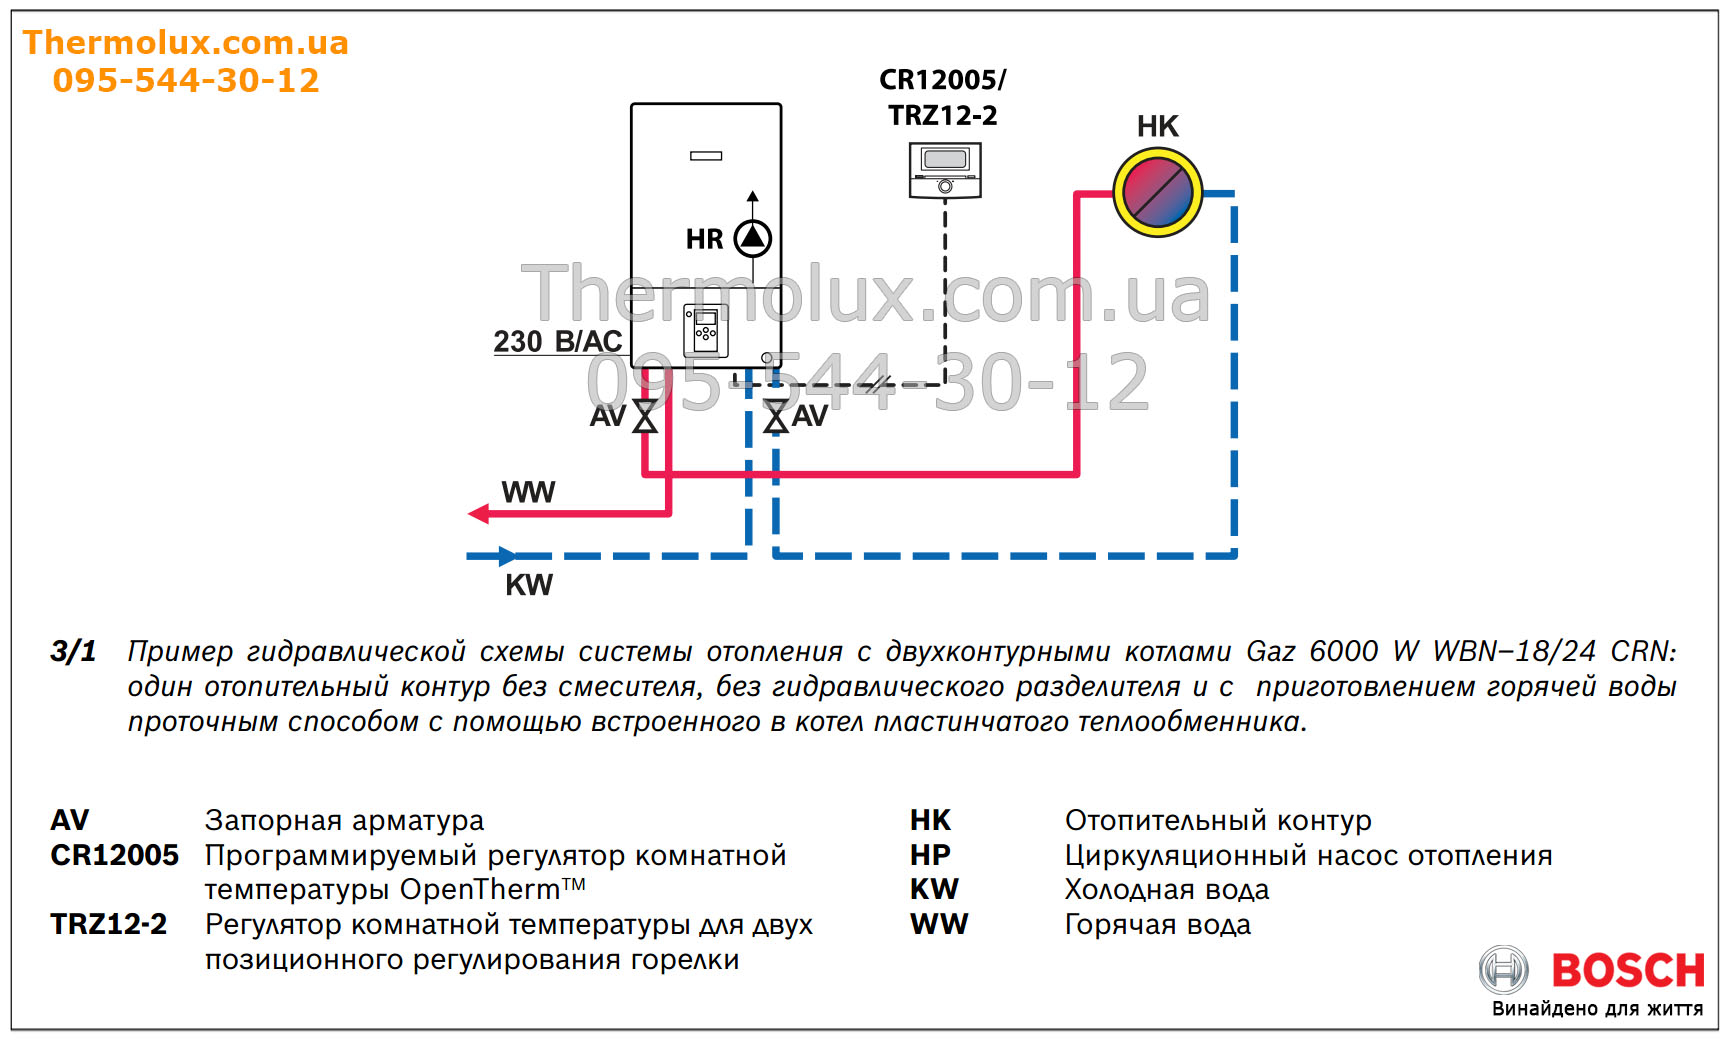 Гидравлическая схема отопления для двухконтурных котлов Bosch Gaz 6000 W